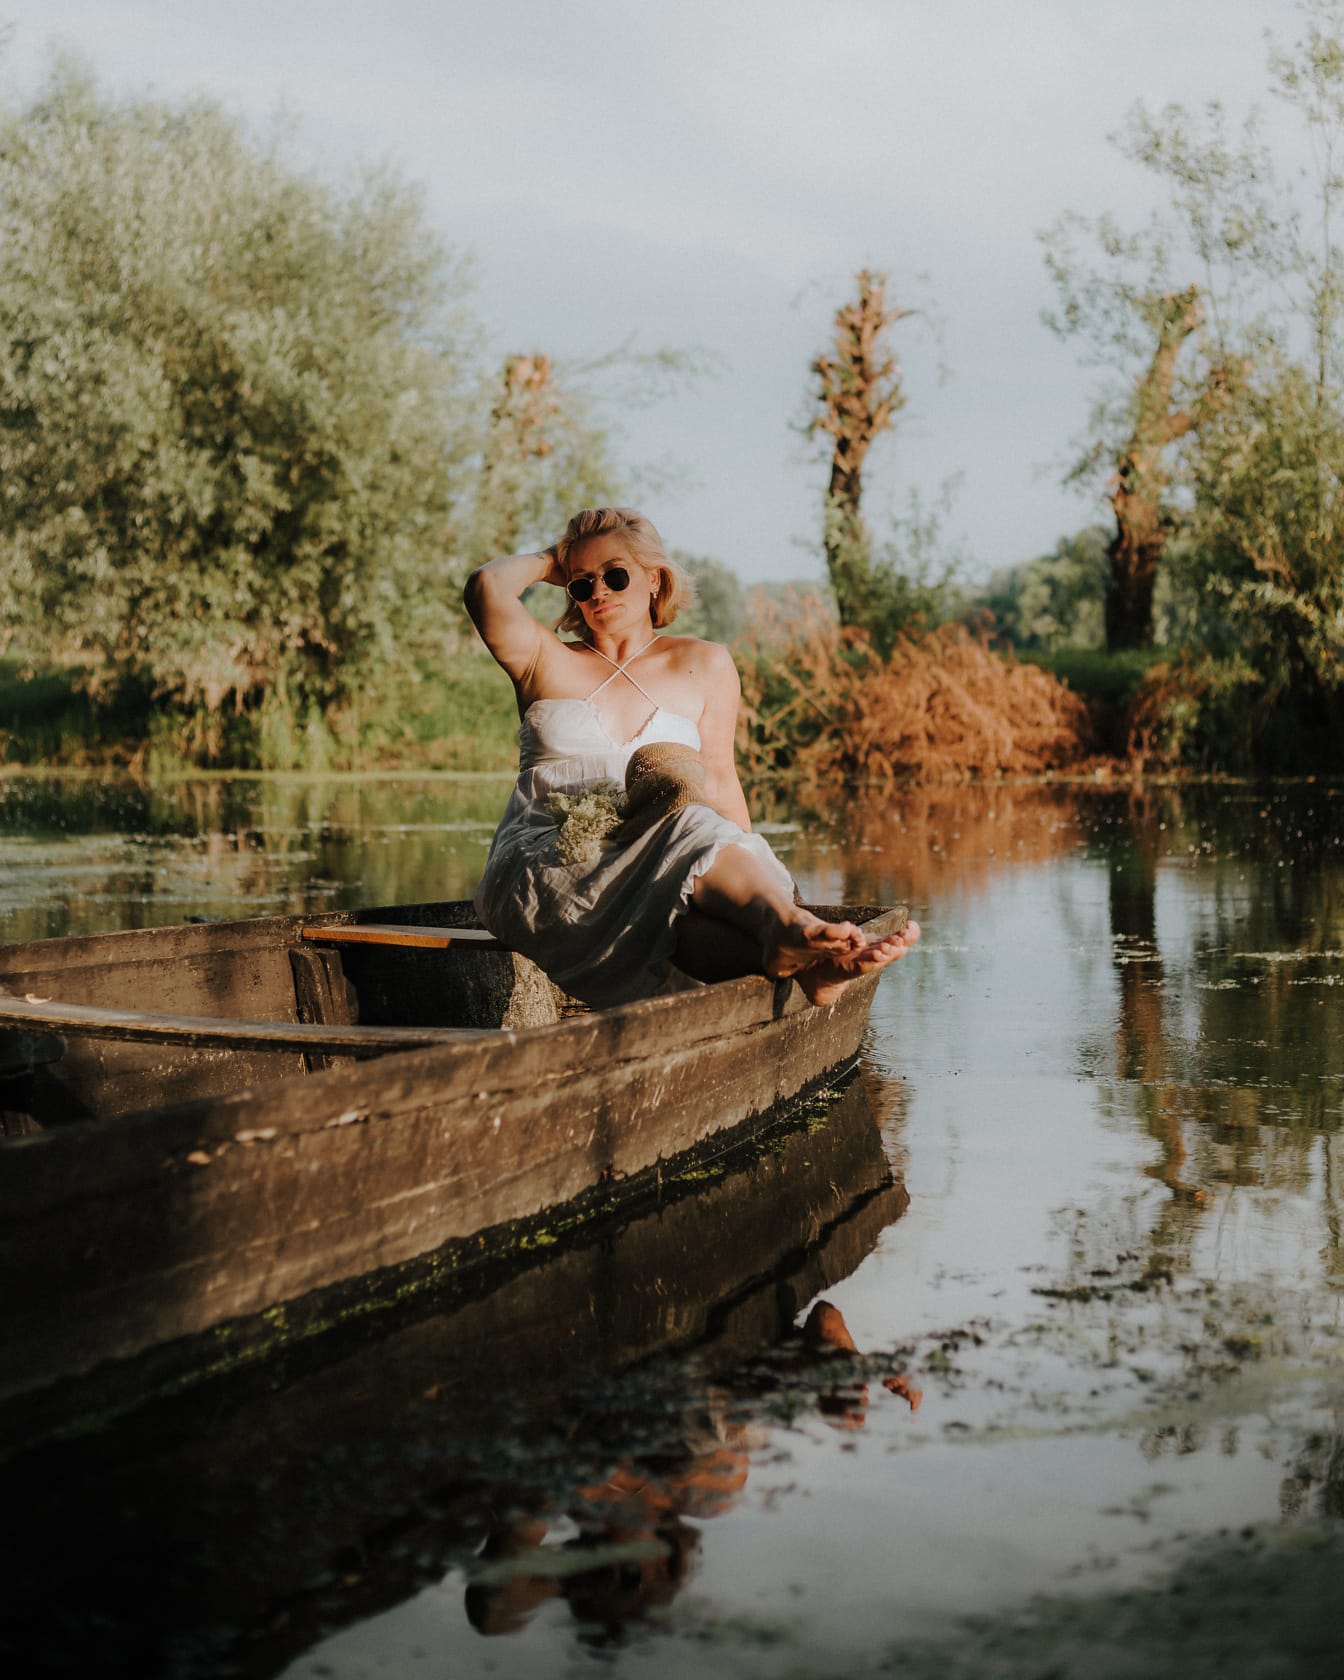 湖畔の木製ボートに座っているゴージャスな女性